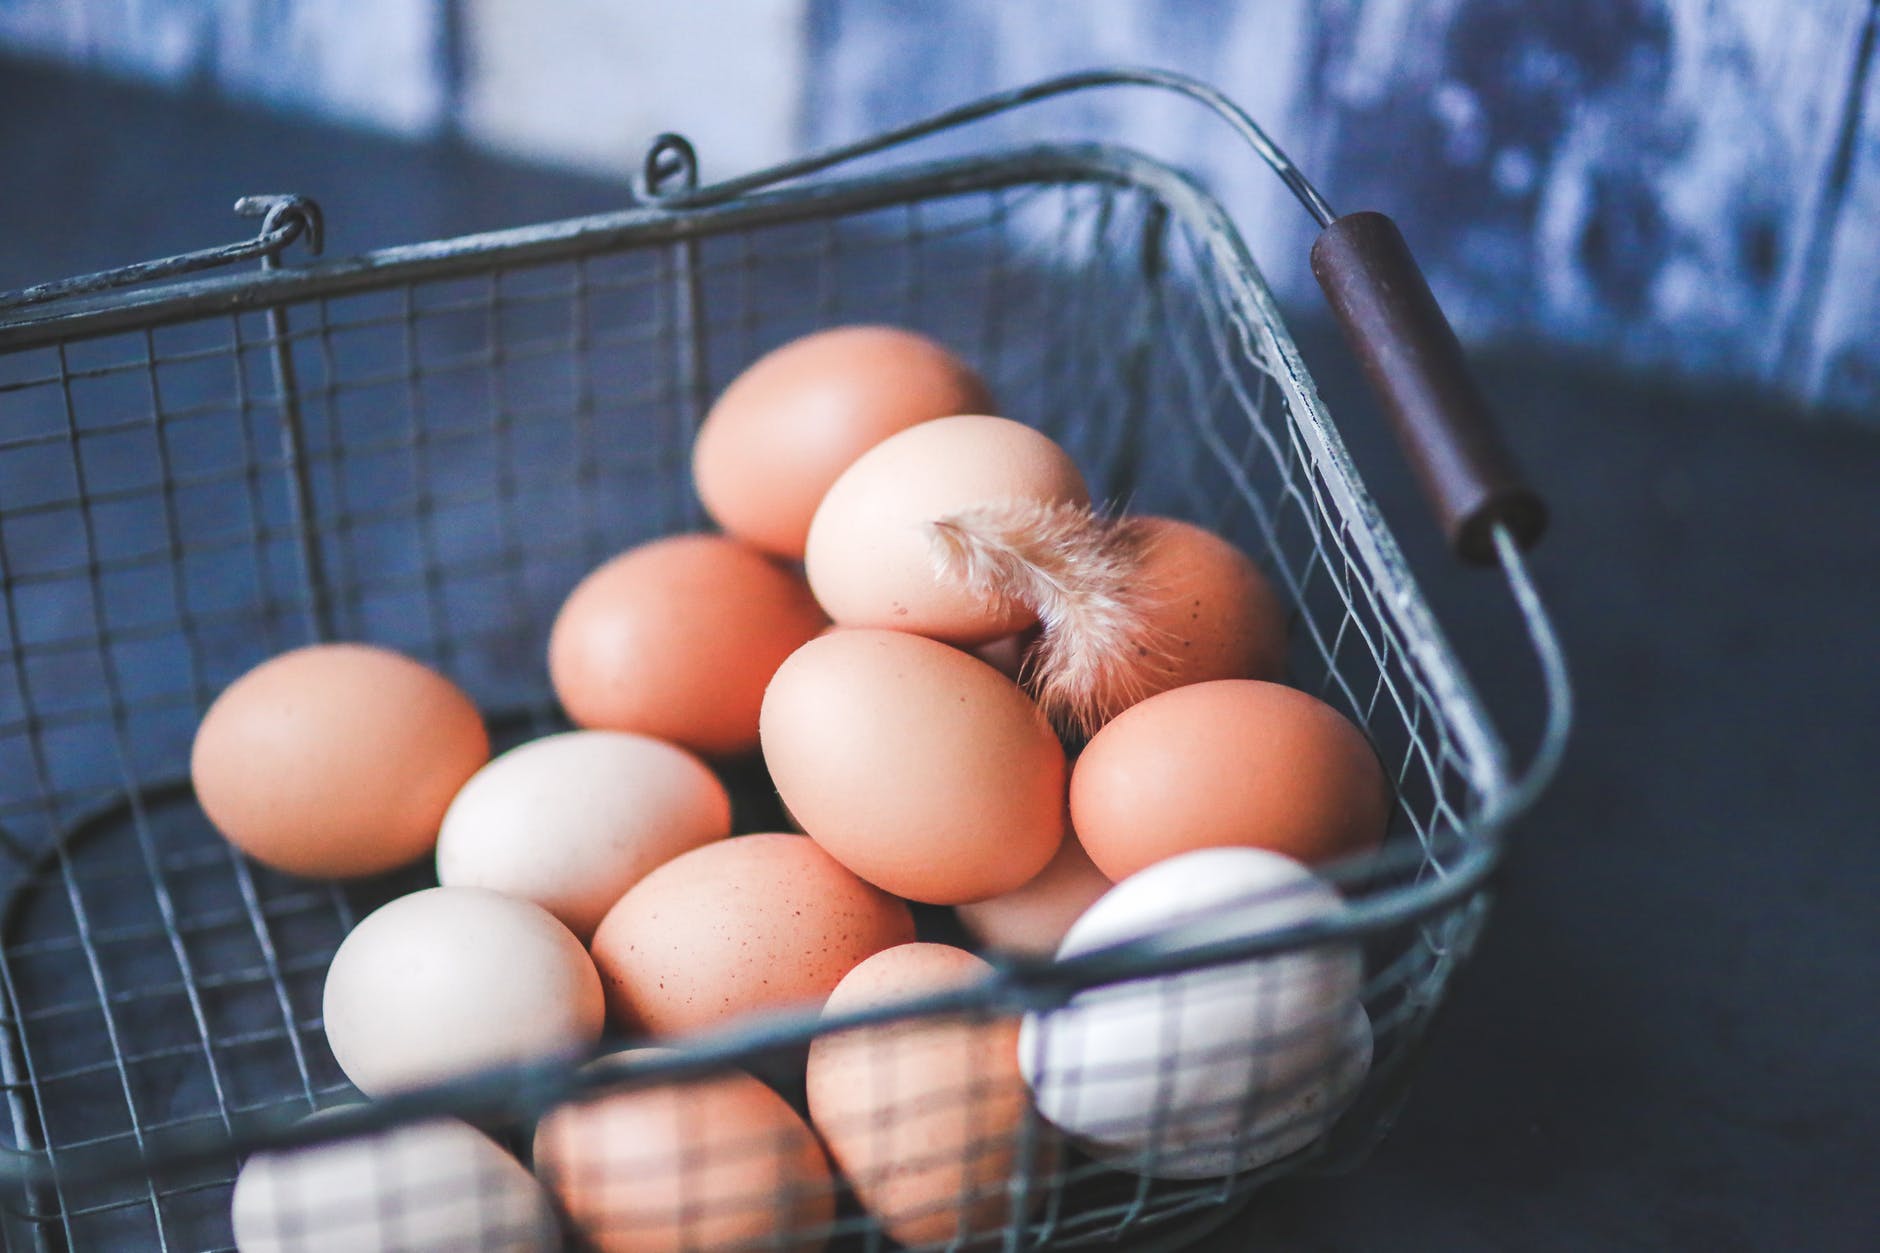 eggs in the metal basket